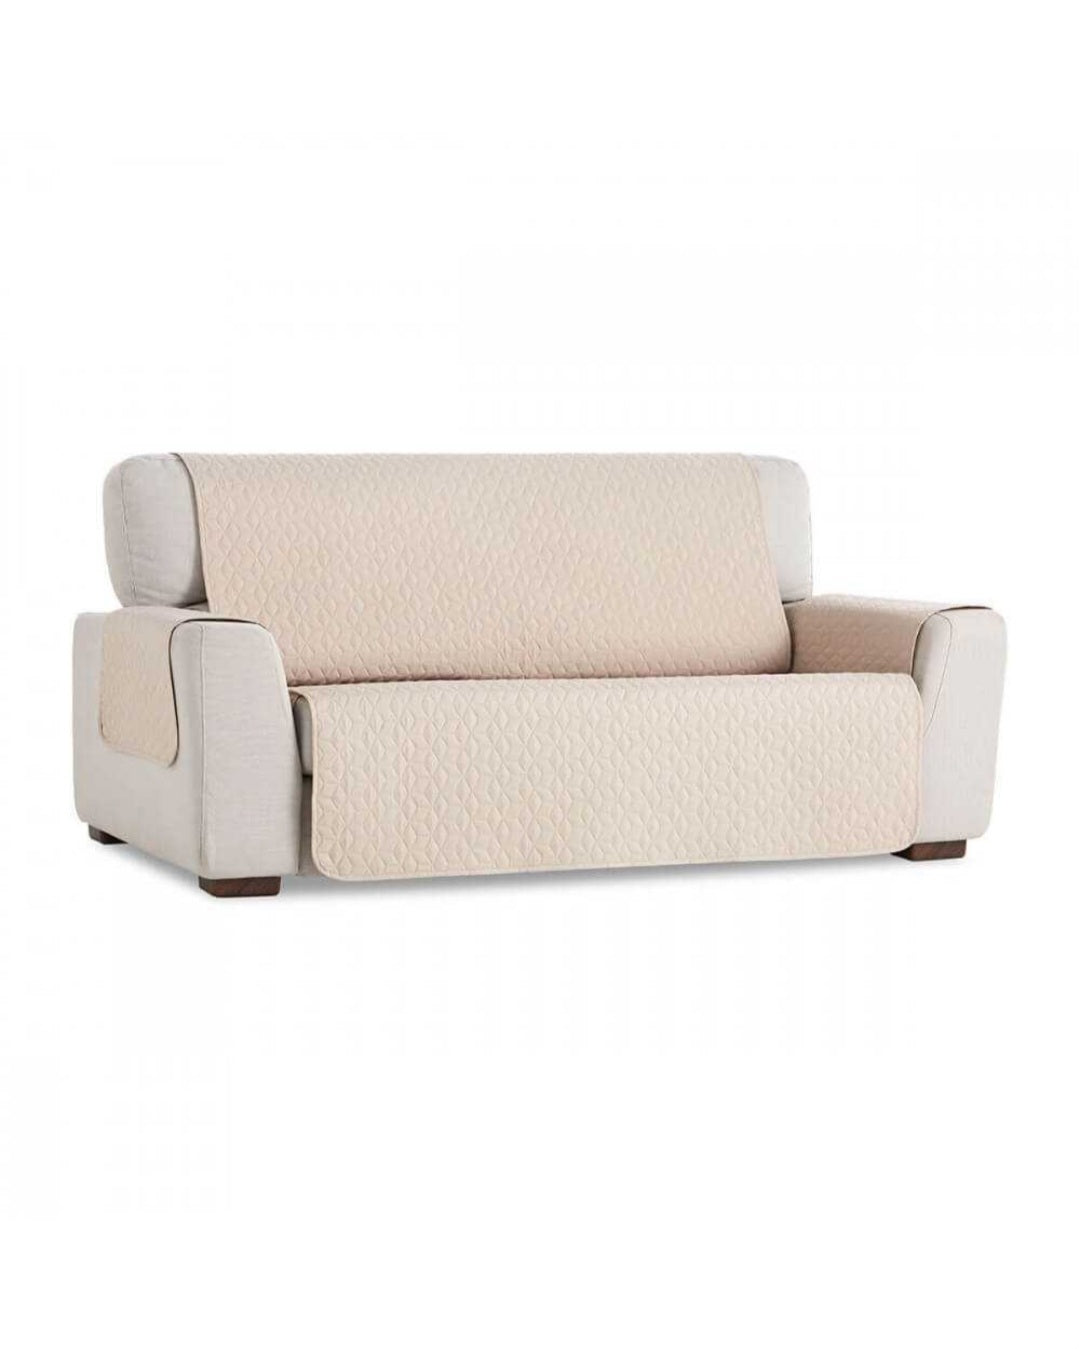 GEO TEFLON sofa cover by Belmarti